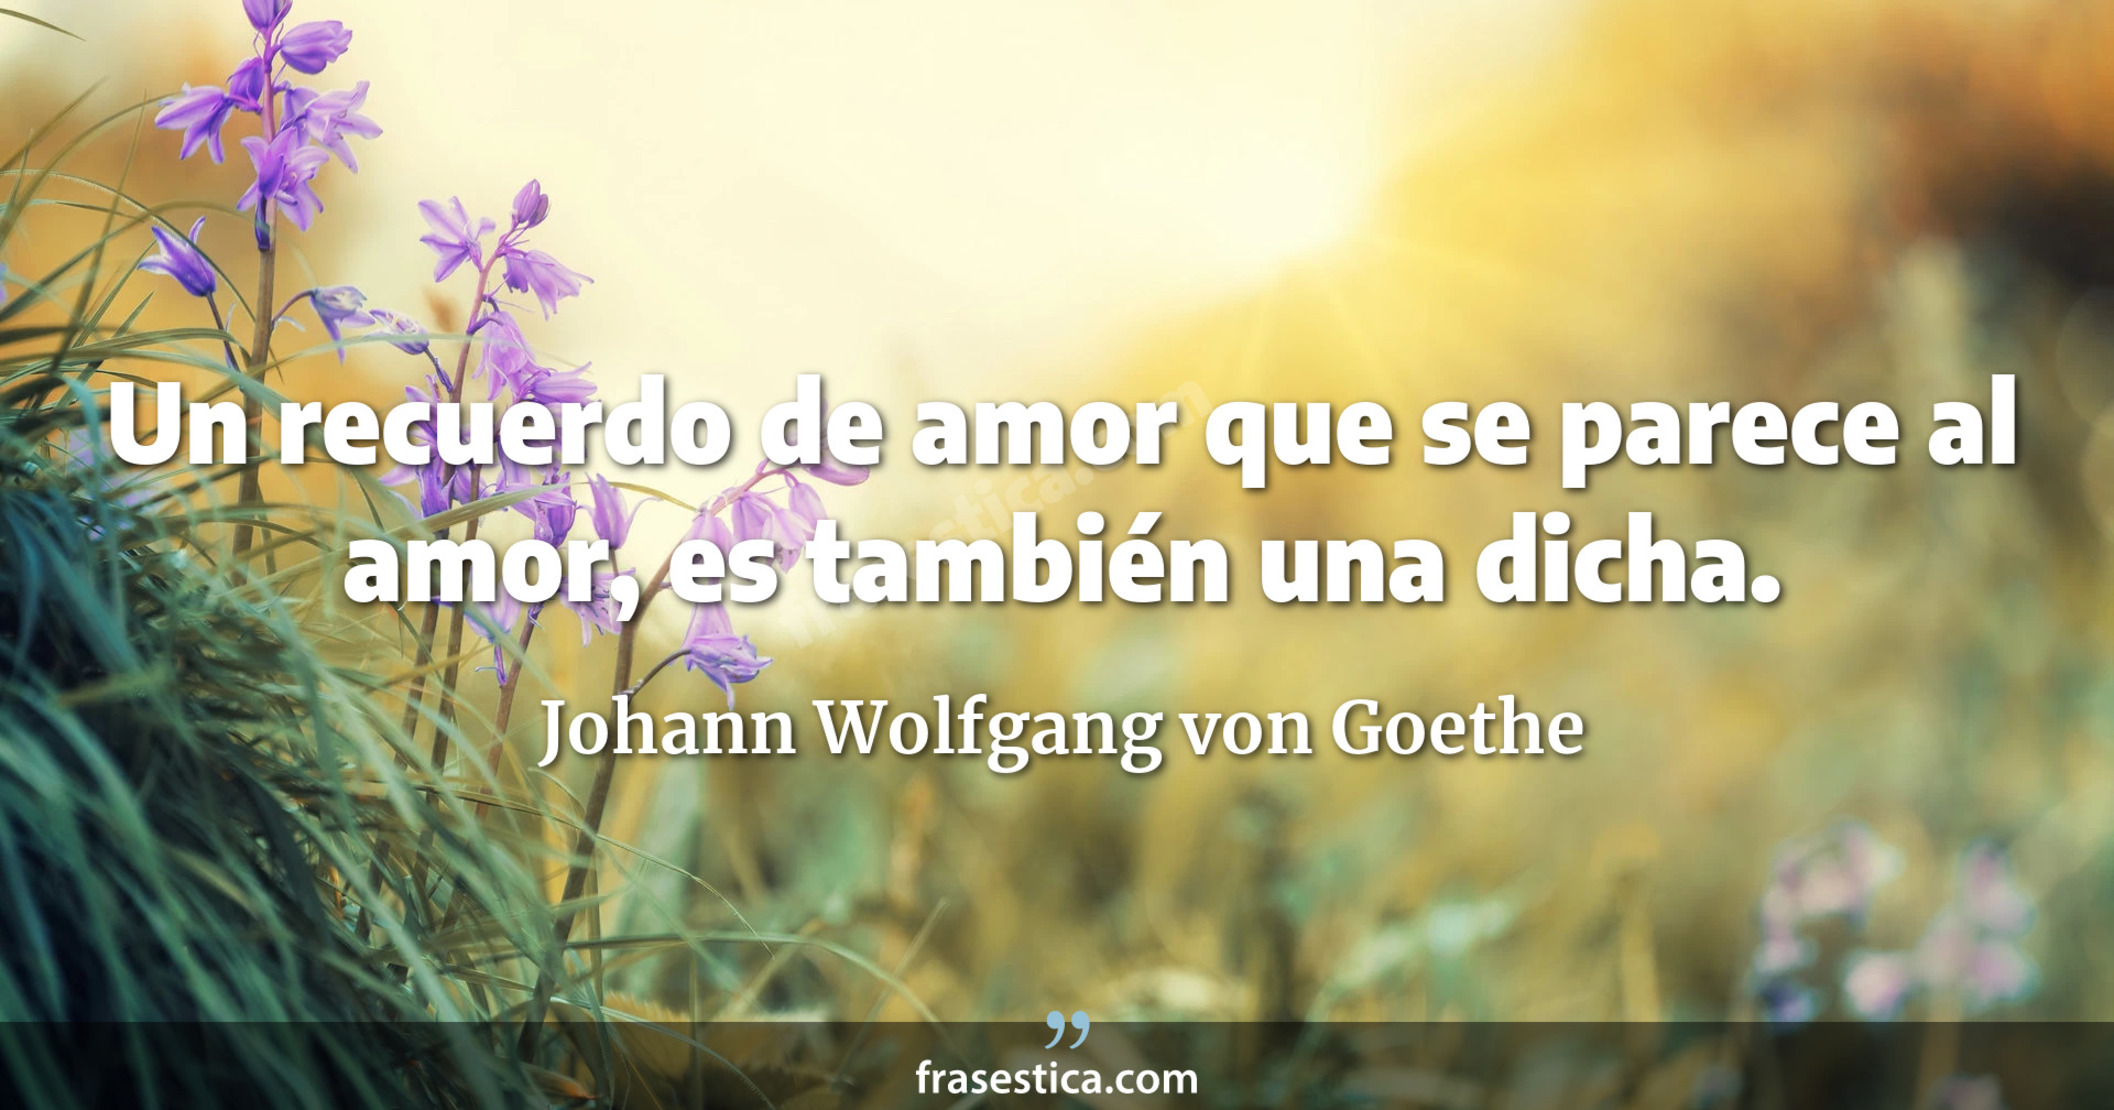 Un recuerdo de amor que se parece al amor, es también una dicha. - Johann Wolfgang von Goethe